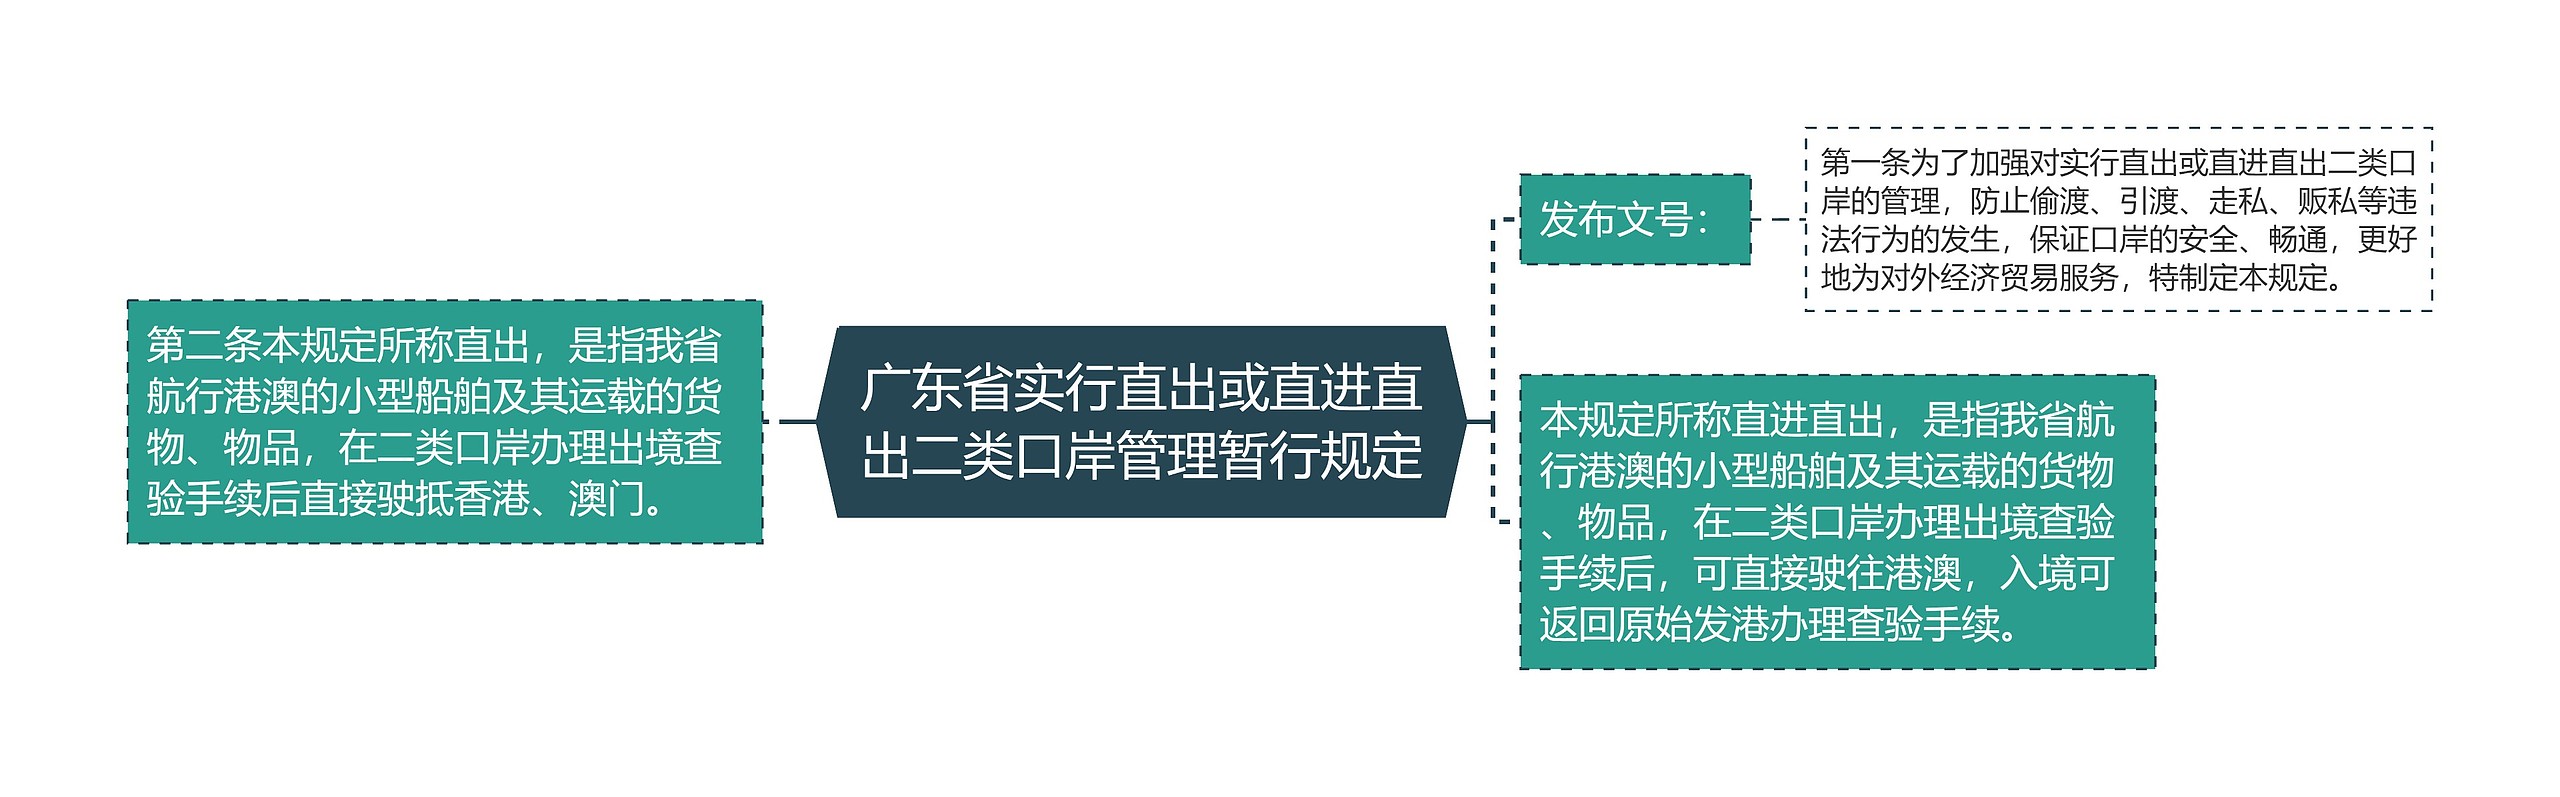 广东省实行直出或直进直出二类口岸管理暂行规定